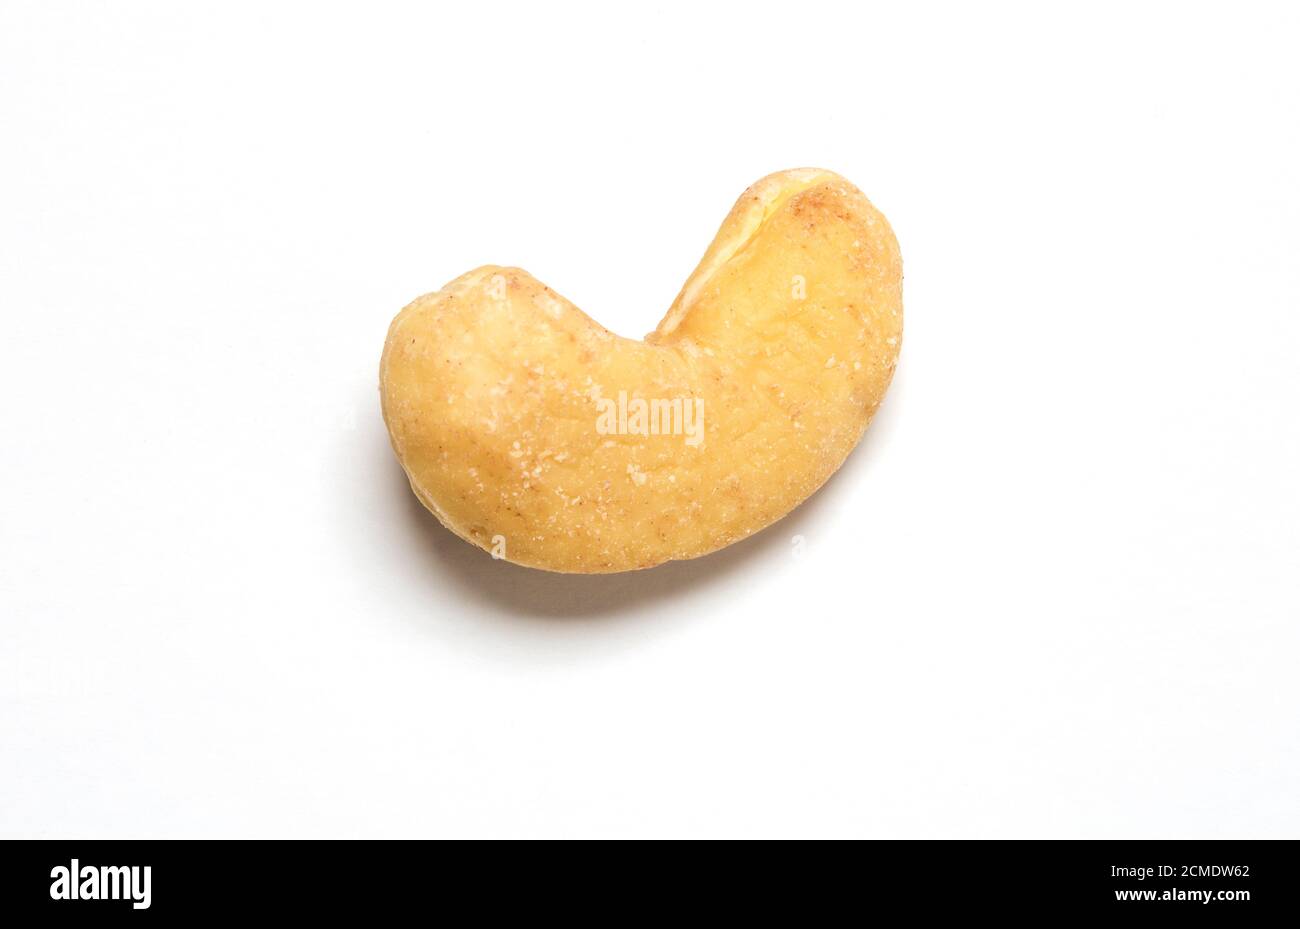 Cashew nut Stock Photo